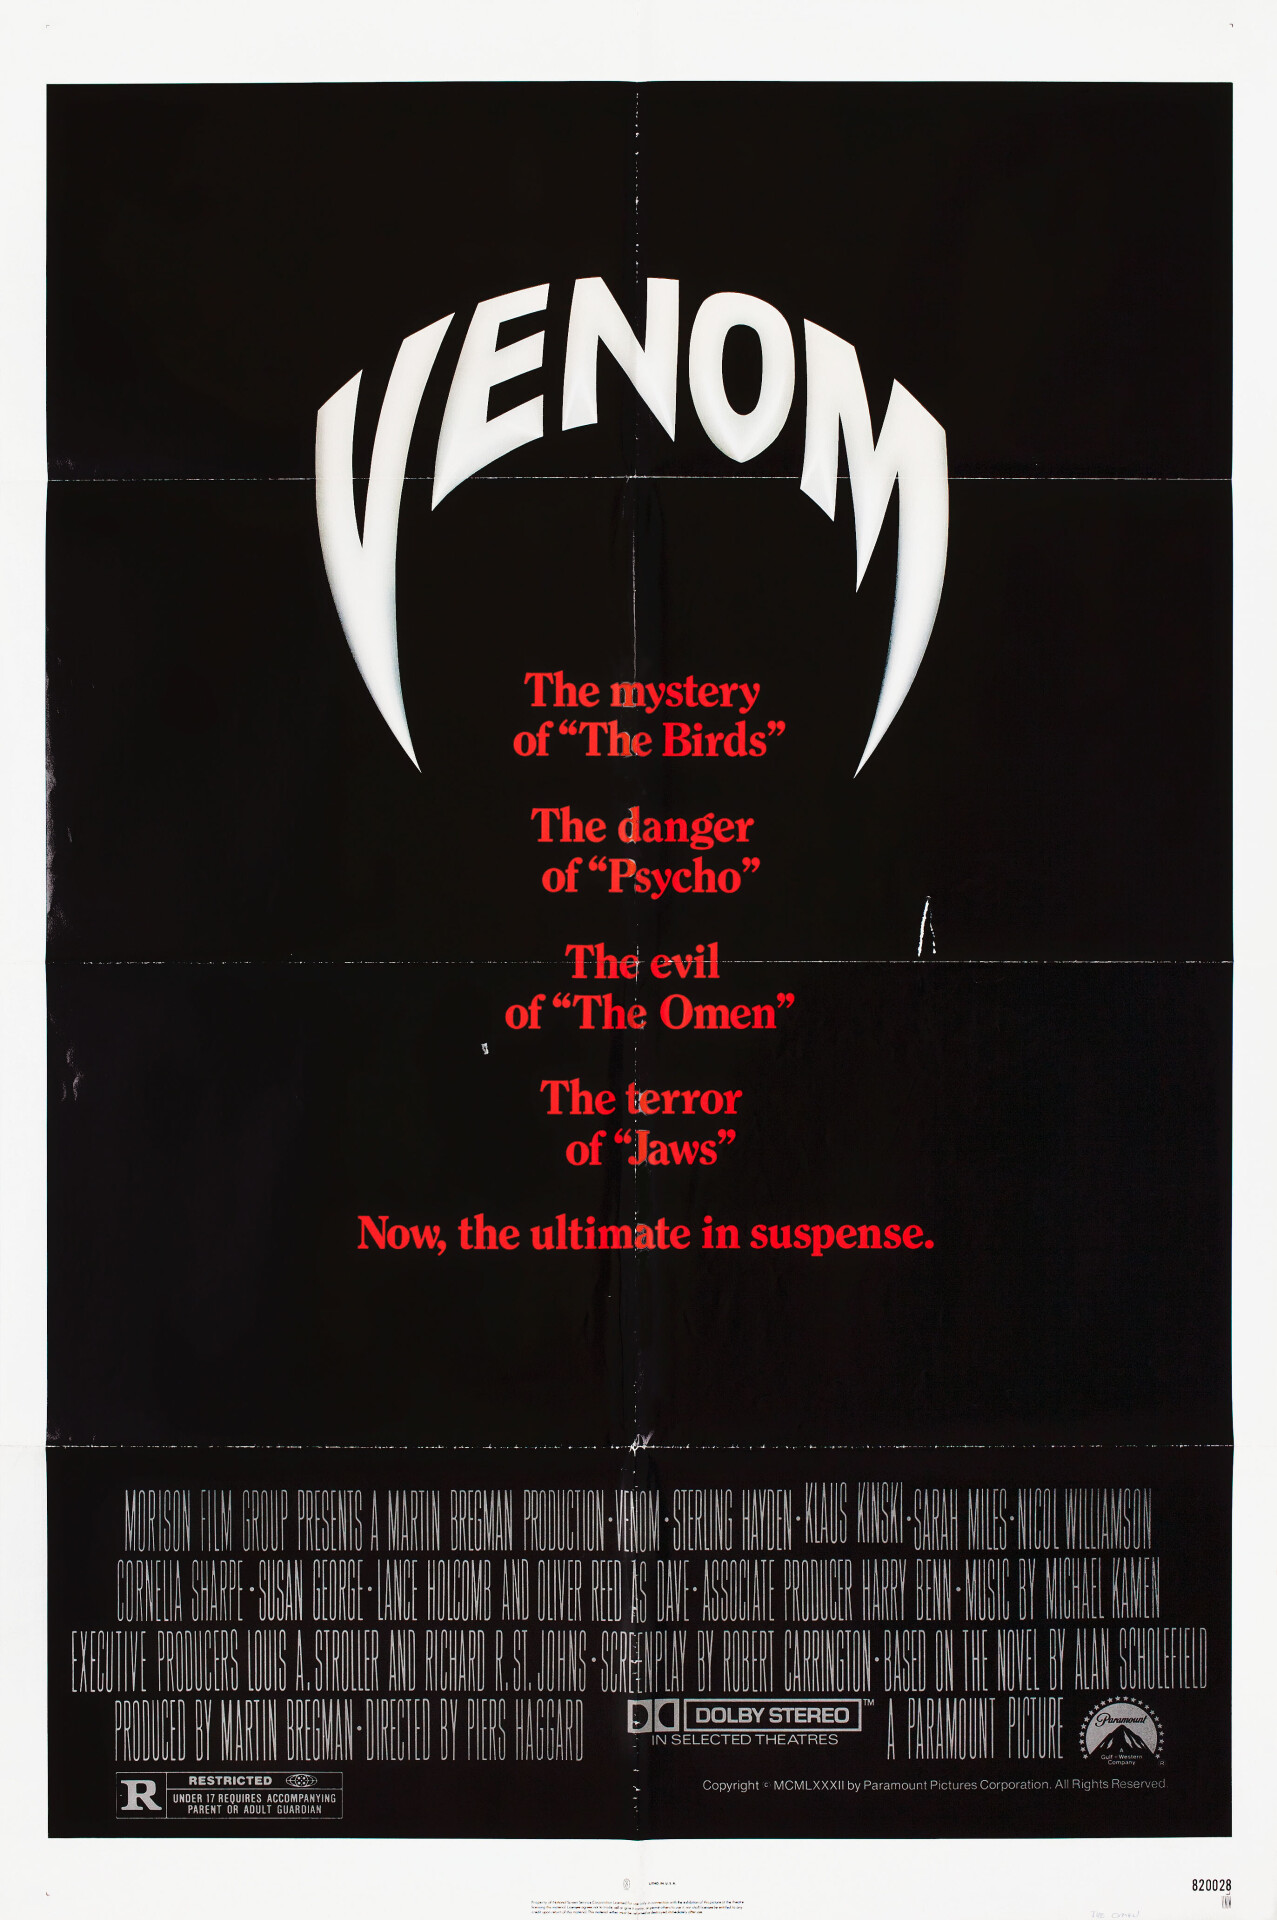 Змеиный яд (Venom, 1981), режиссёр Пьерс Хаггард, американский постер к фильму (ужасы, 1982 год)